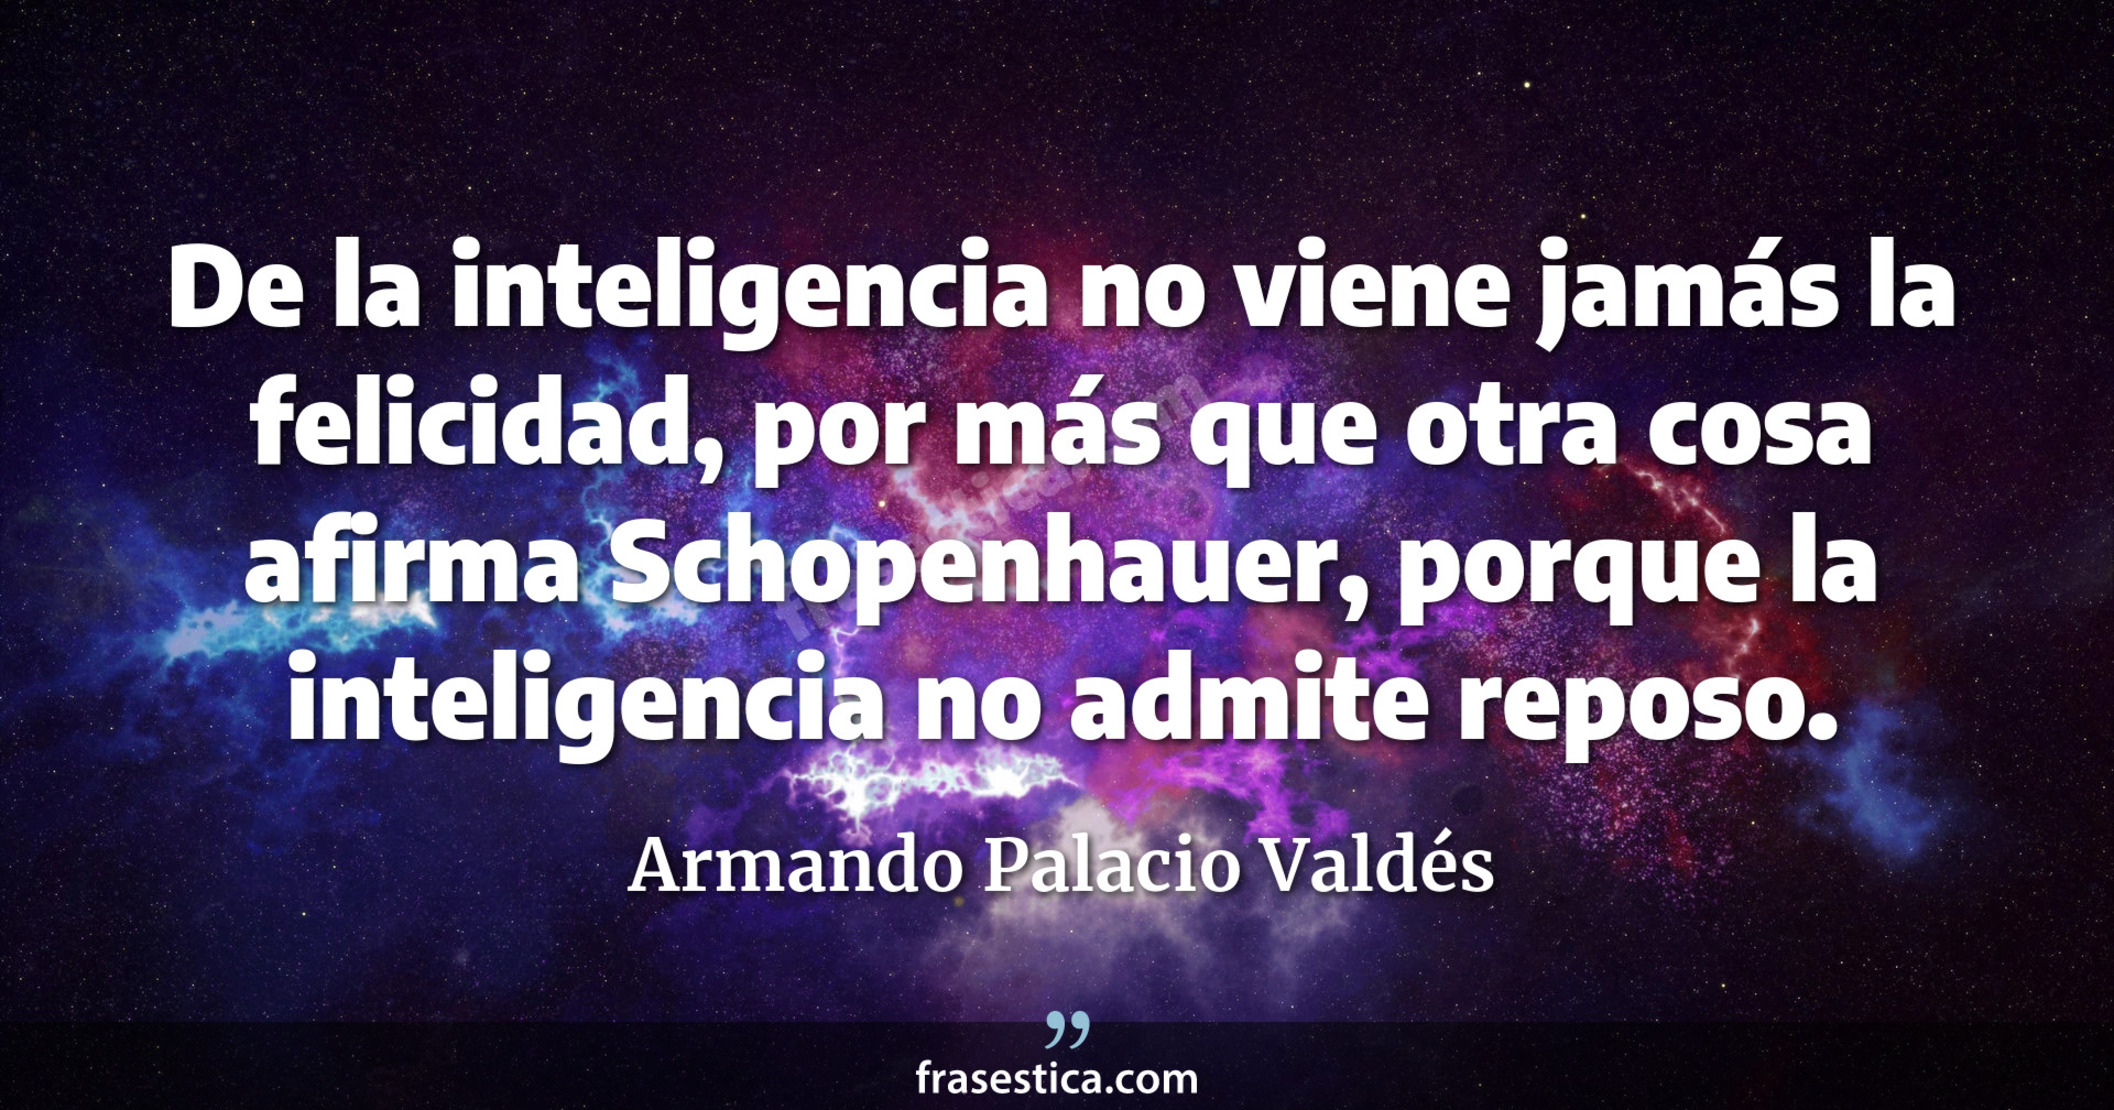 De la inteligencia no viene jamás la felicidad, por más que otra cosa afirma Schopenhauer, porque la inteligencia no admite reposo. - Armando Palacio Valdés